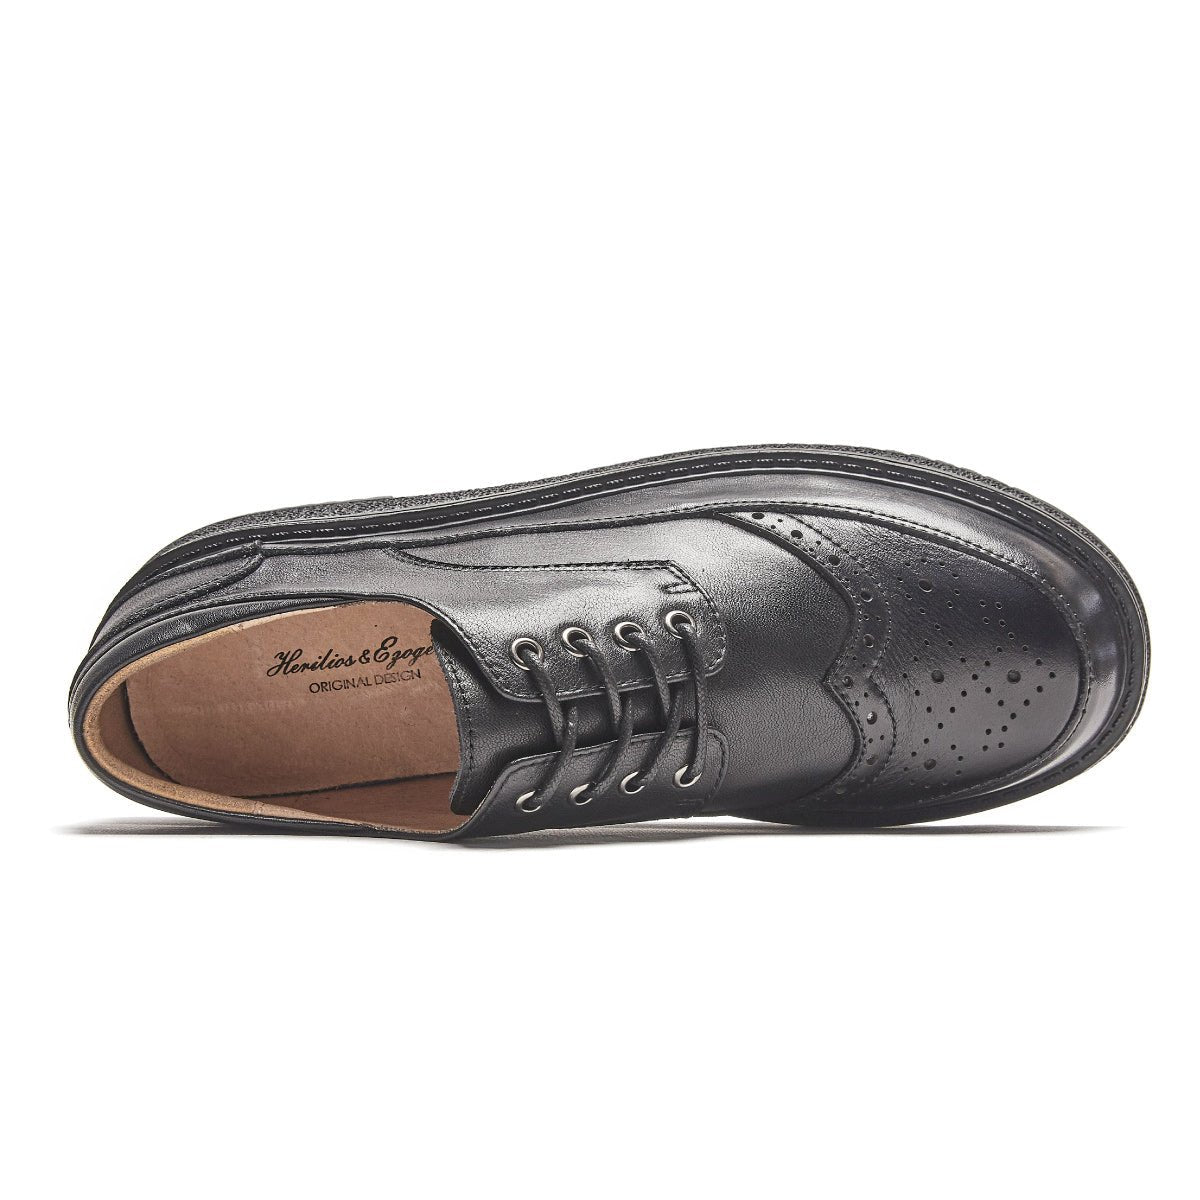 Comfort Soul Brogue Wingtip Black Lace Up Leather Shoes - 0cm